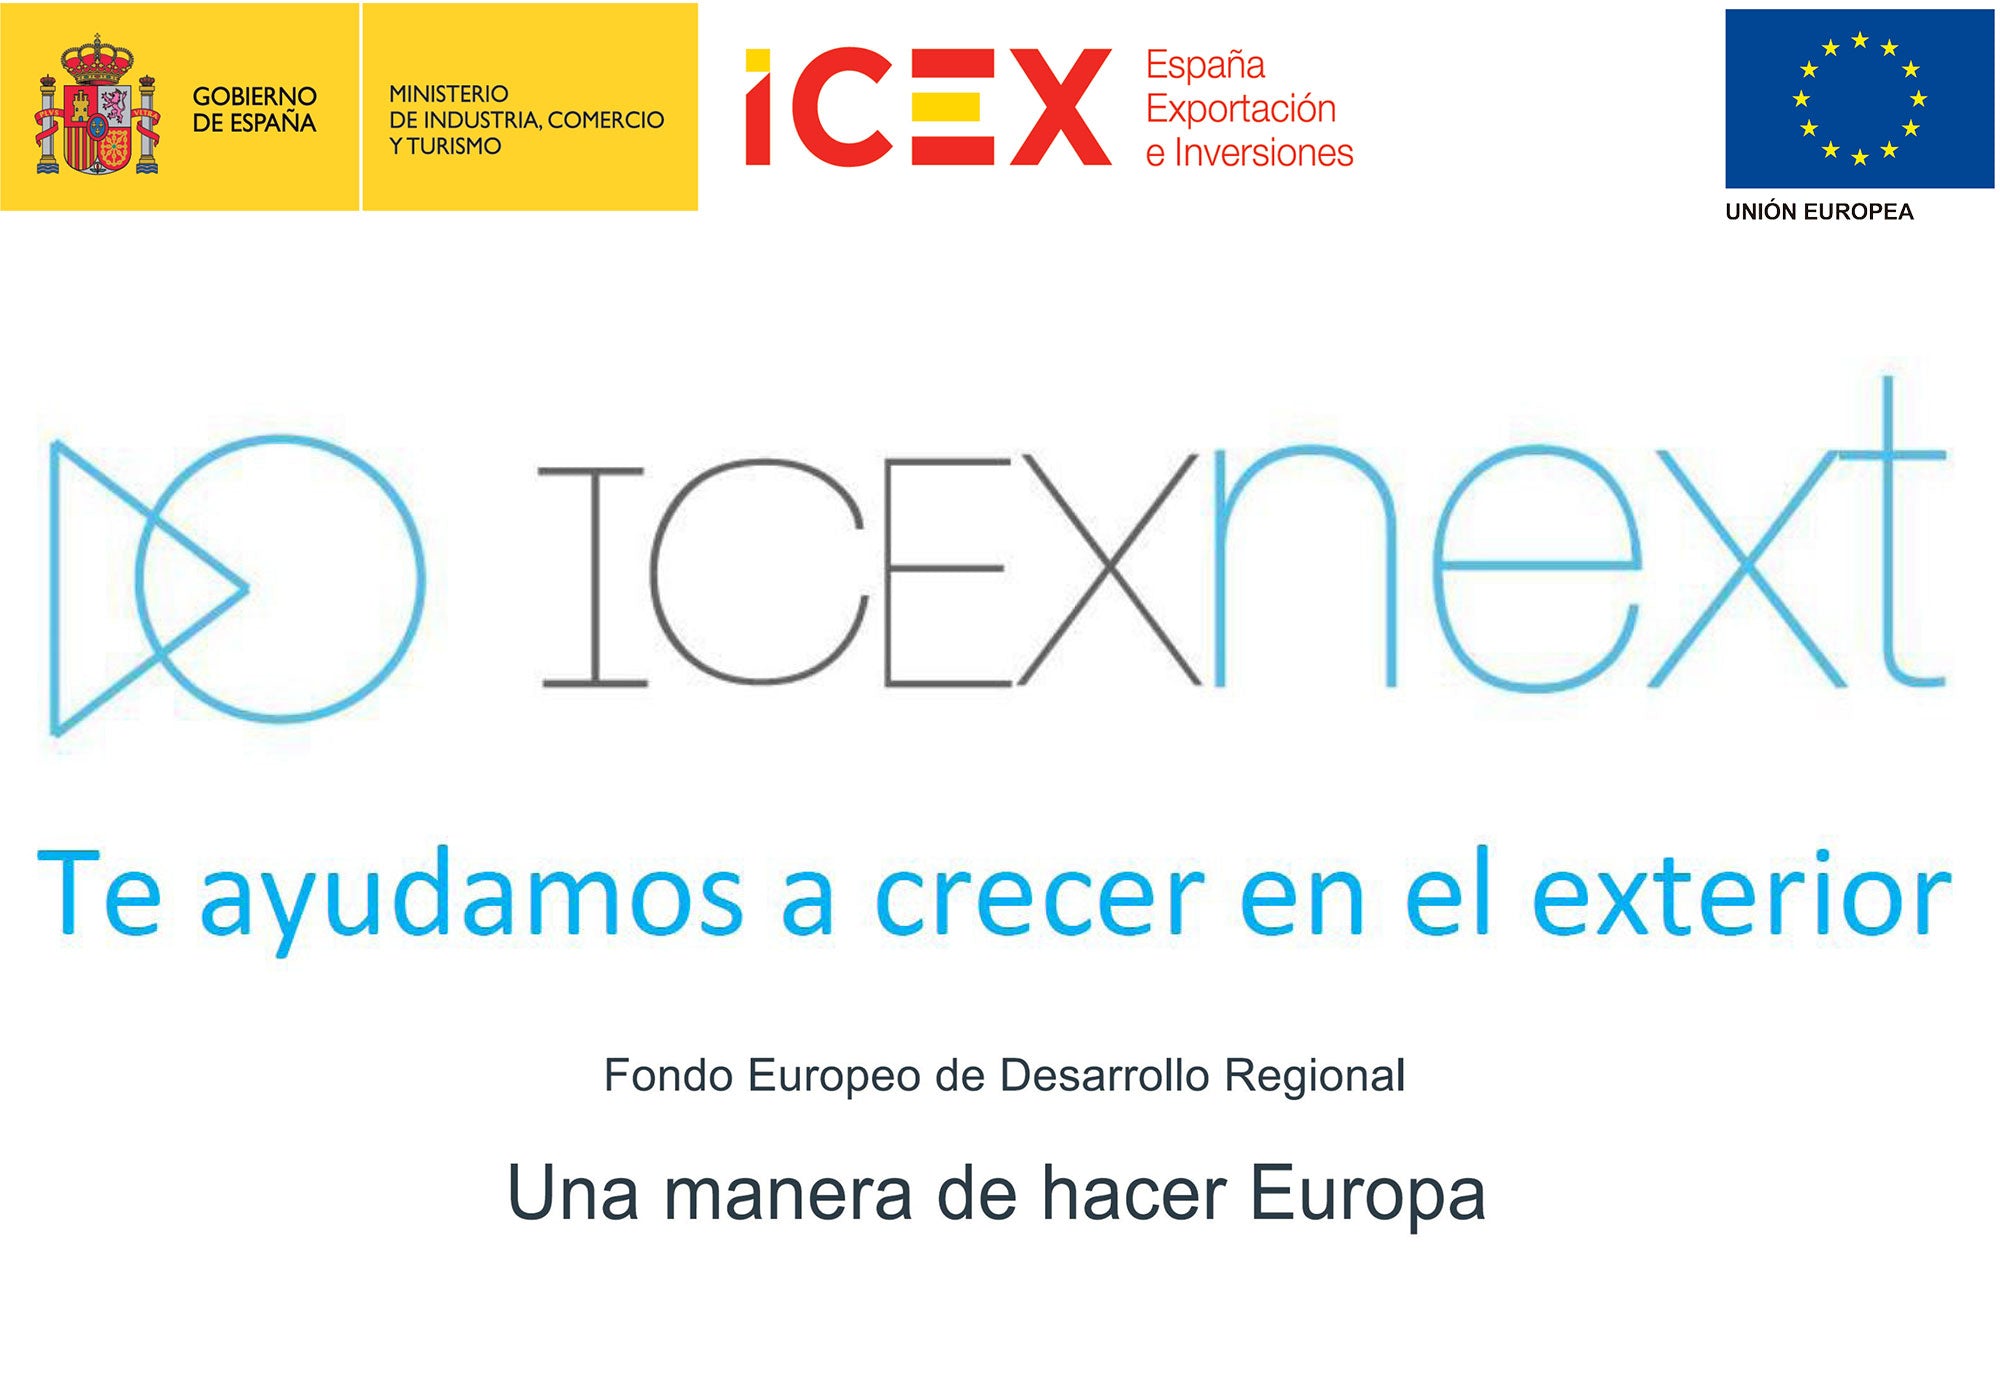 ICEXNEXT España Exportación e Inversiones